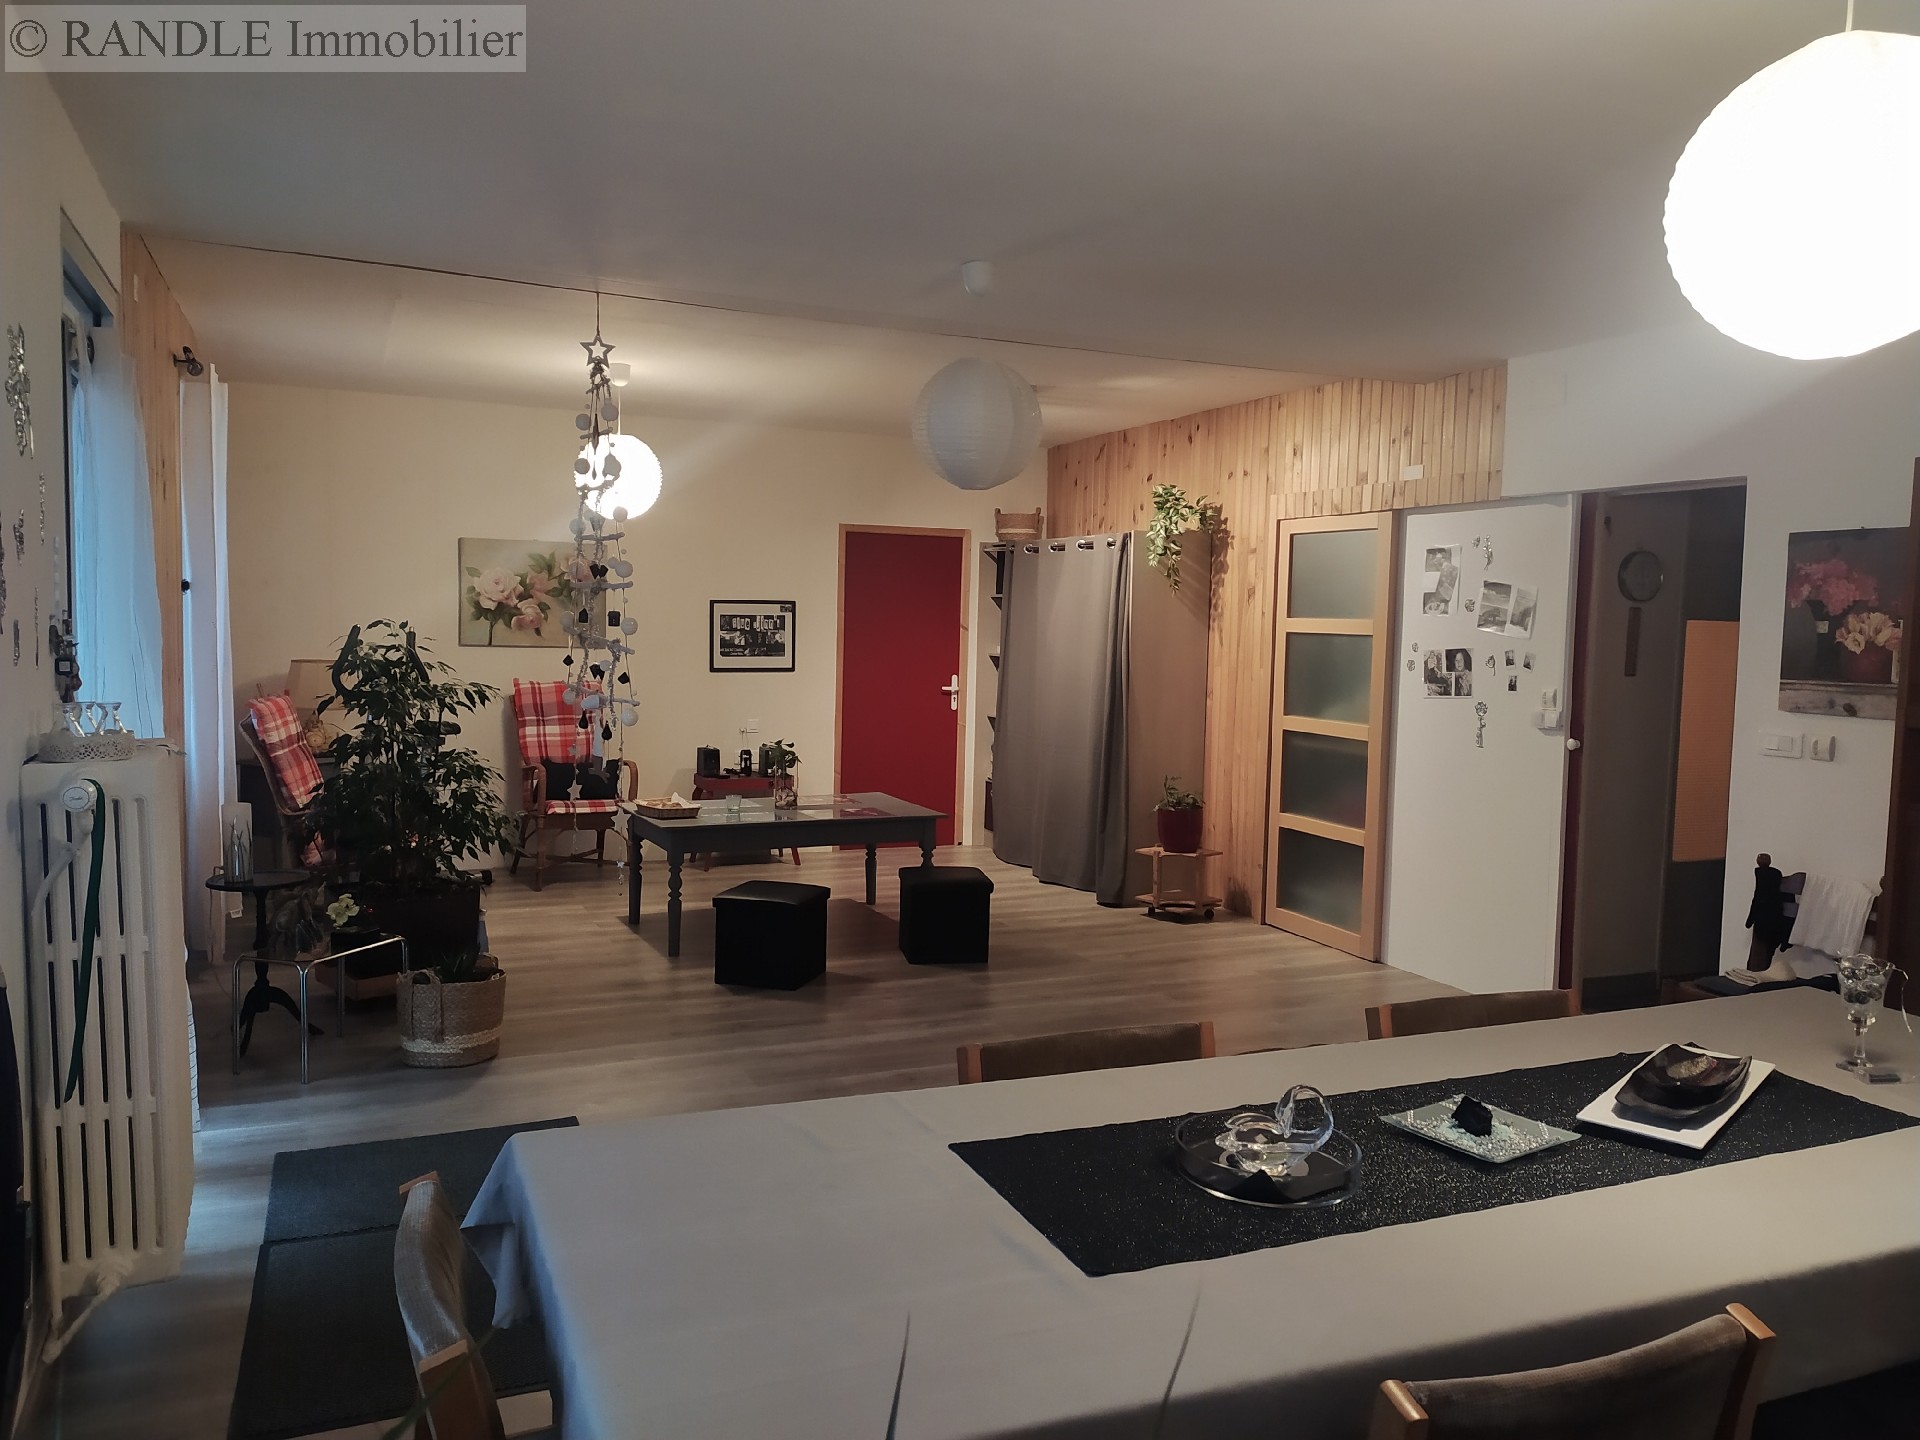 Vente maison - BANNALEC 169 m², 8 pièces